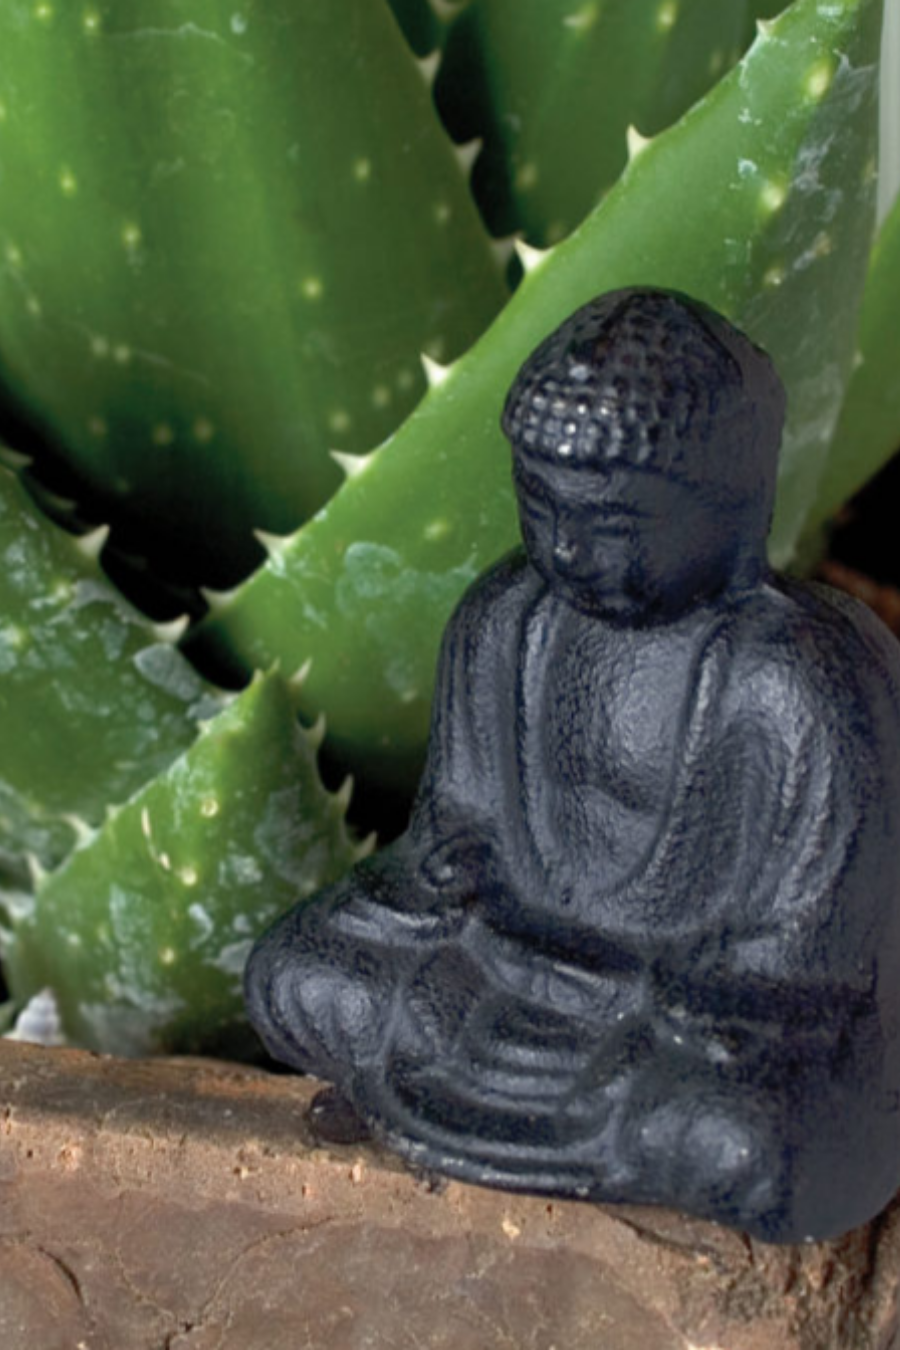 Small Cast Iron Sitting Buddha